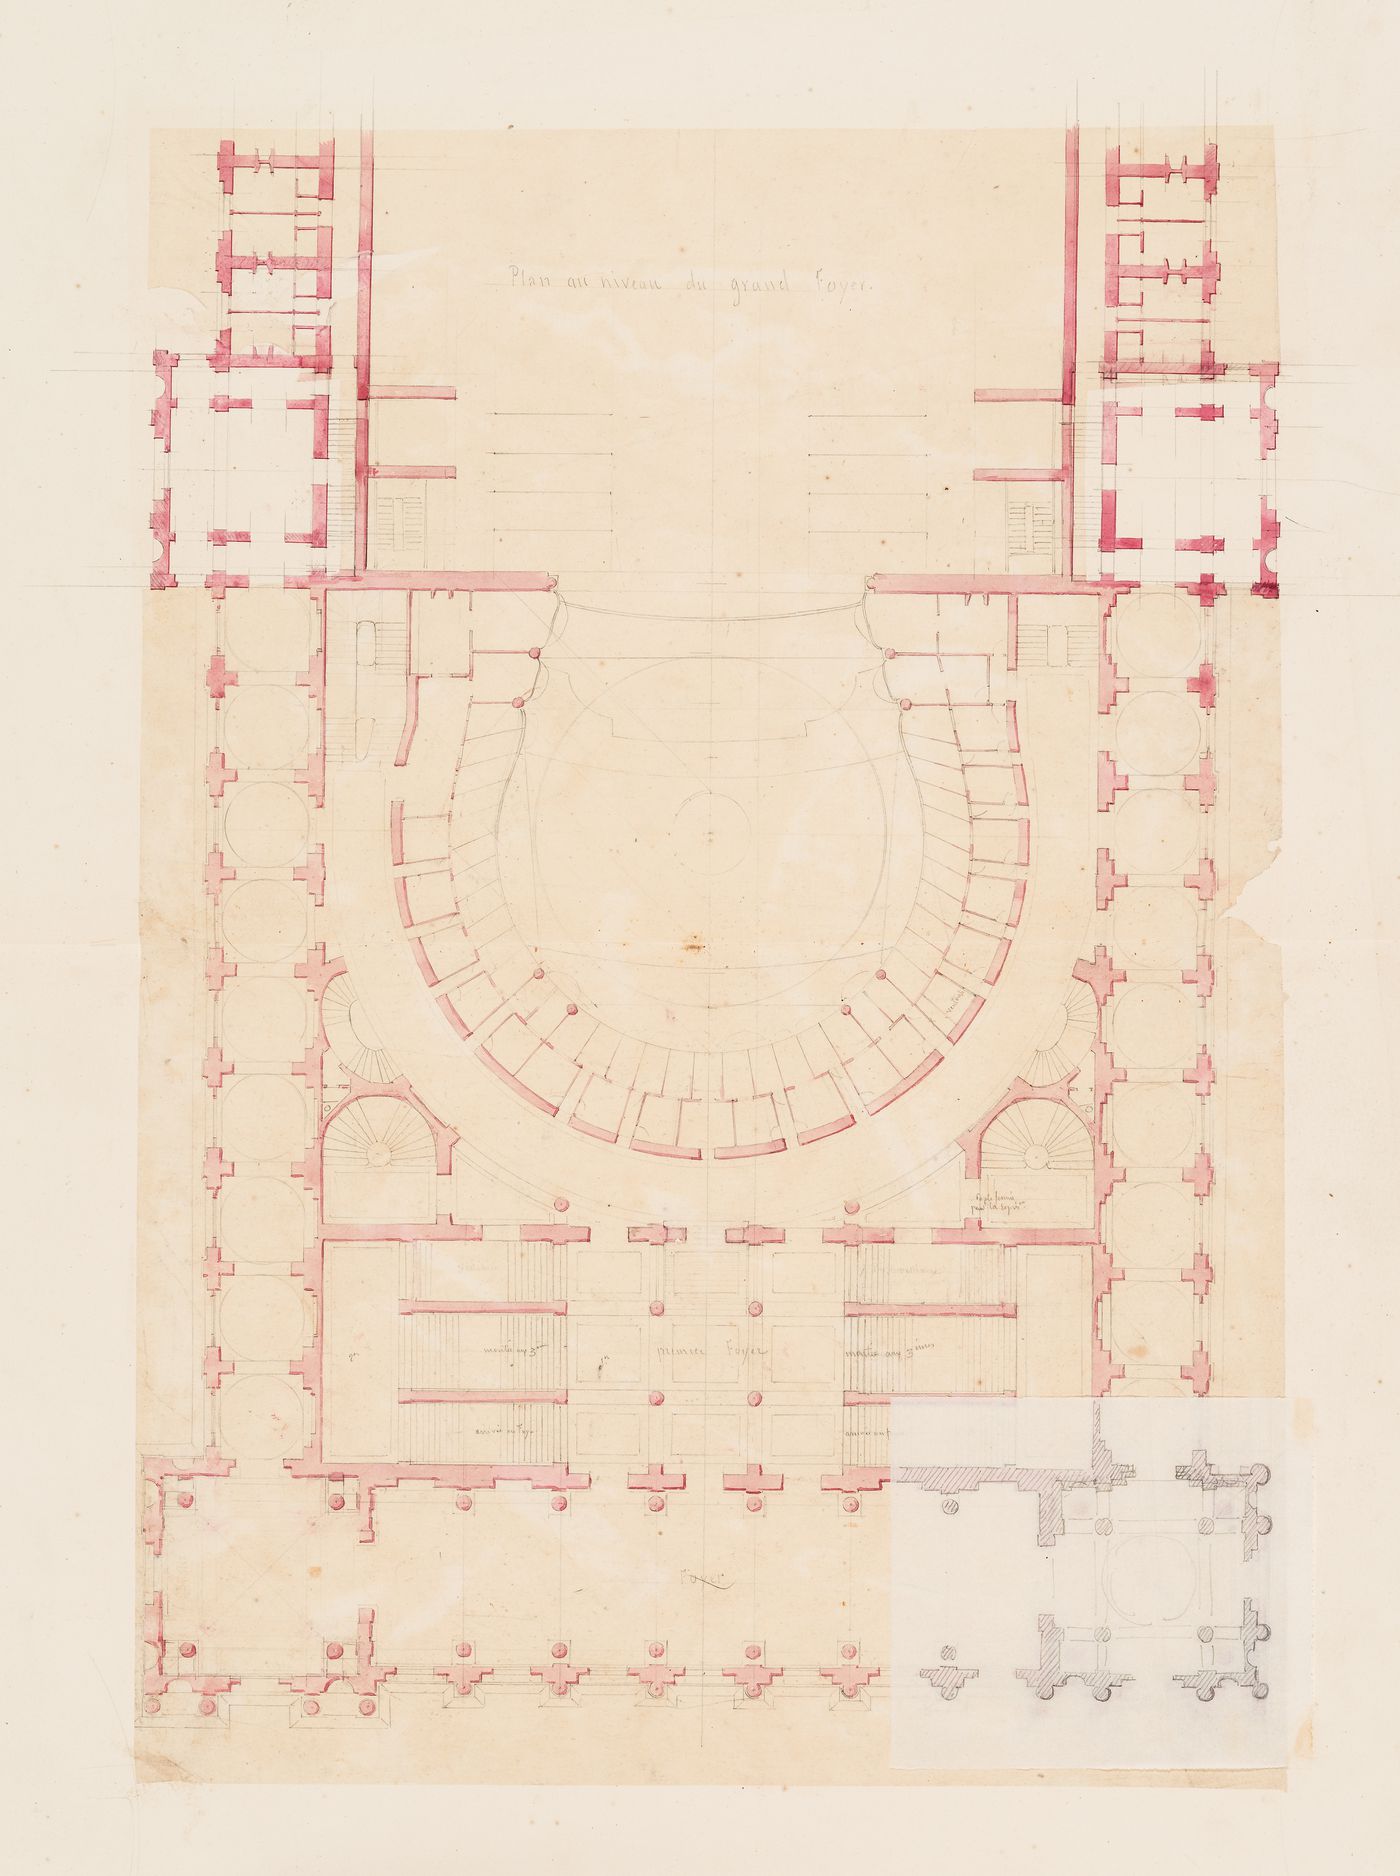 Plan for the "niveau du grand foyer" for an opera house for the Académie royale de musique